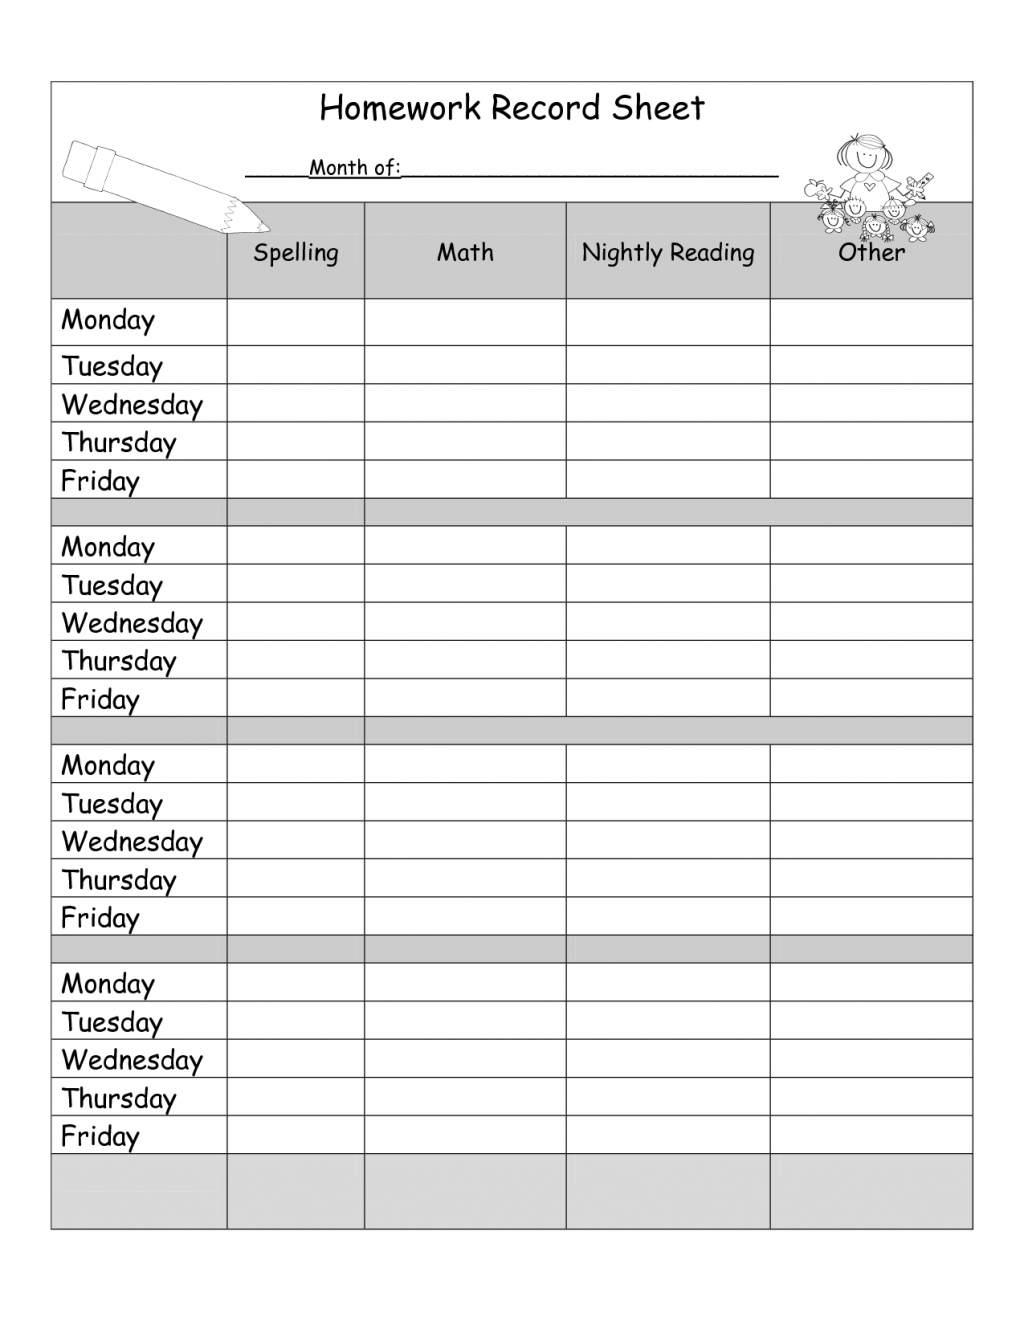 weekly homework sheet printable